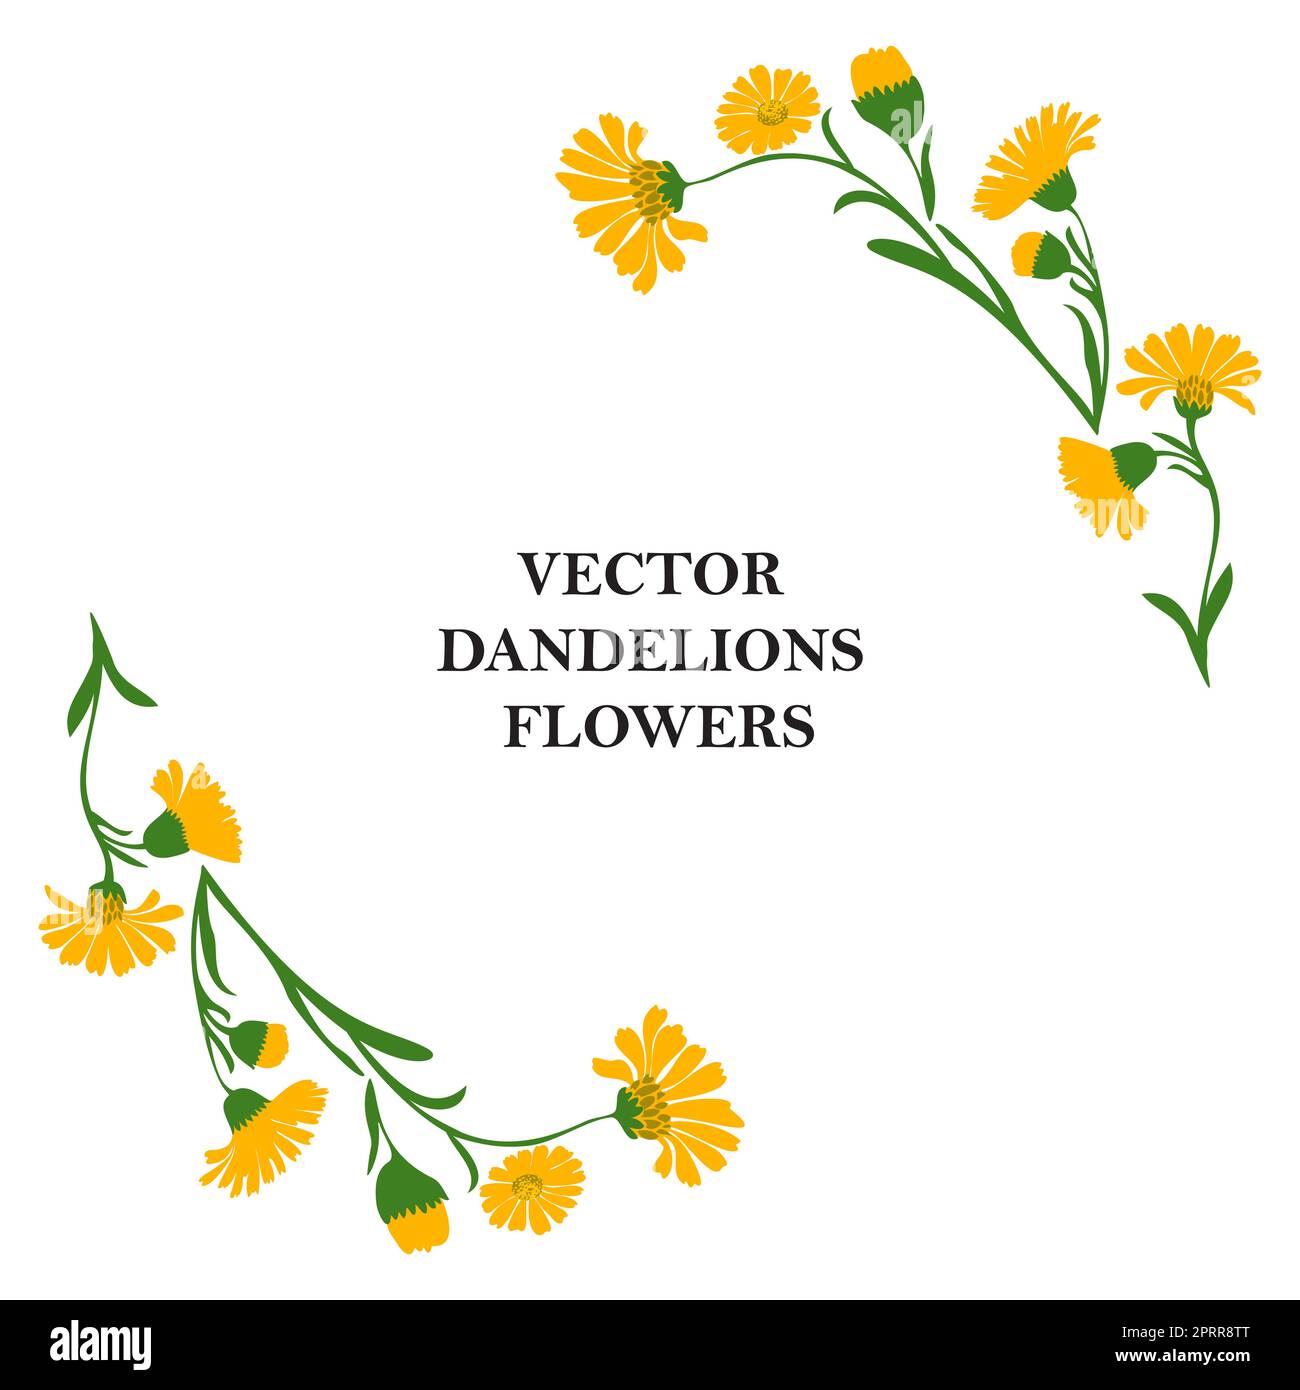 Uber den Blütenrand von Pflanzenlöwenzahn isoliert auf weißem Hintergrund. Botanischer Rahmen mit gelben Astblumen und grünen Blättern Gänseblümchen-Vektordarstellung. Grafikdesign für Gruß, Feiertage und Feiern Stock Vektor